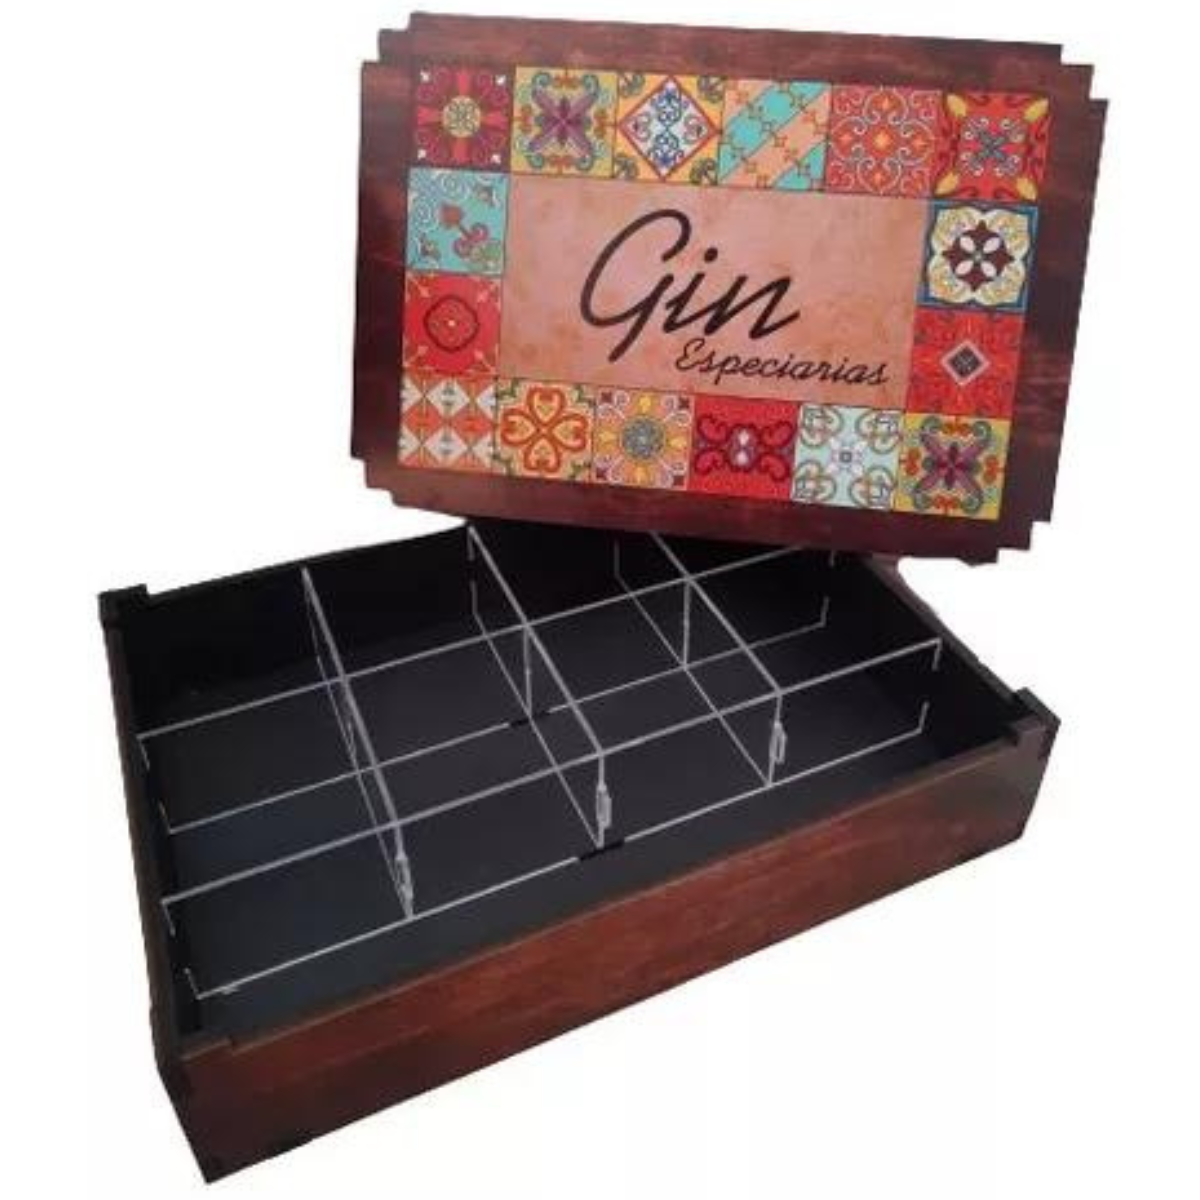 Caixa Gin Tonica - Porta Chá - Box Especiarias Organizadora - 8 Divisórias - MDF Adesivado - 29cm